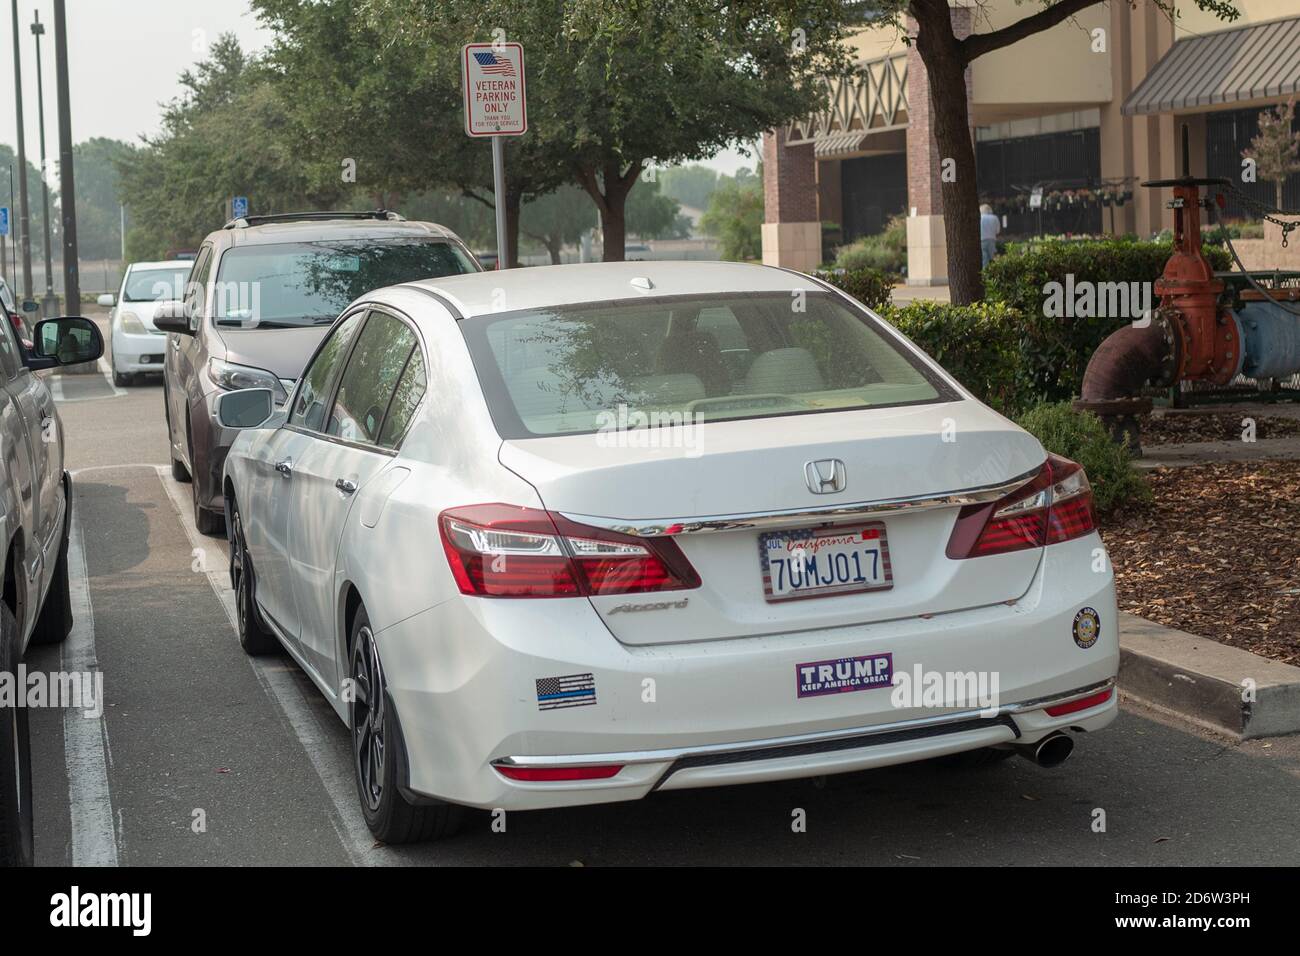 Ein weißes Auto mit einem Trump-Bumpersticker, der auf US-Präsident Donald Trump verweist, wird in einem Veterans Only Parkplatz in Dublin, Kalifornien, 12. September 2020 geparkt. () Stockfoto